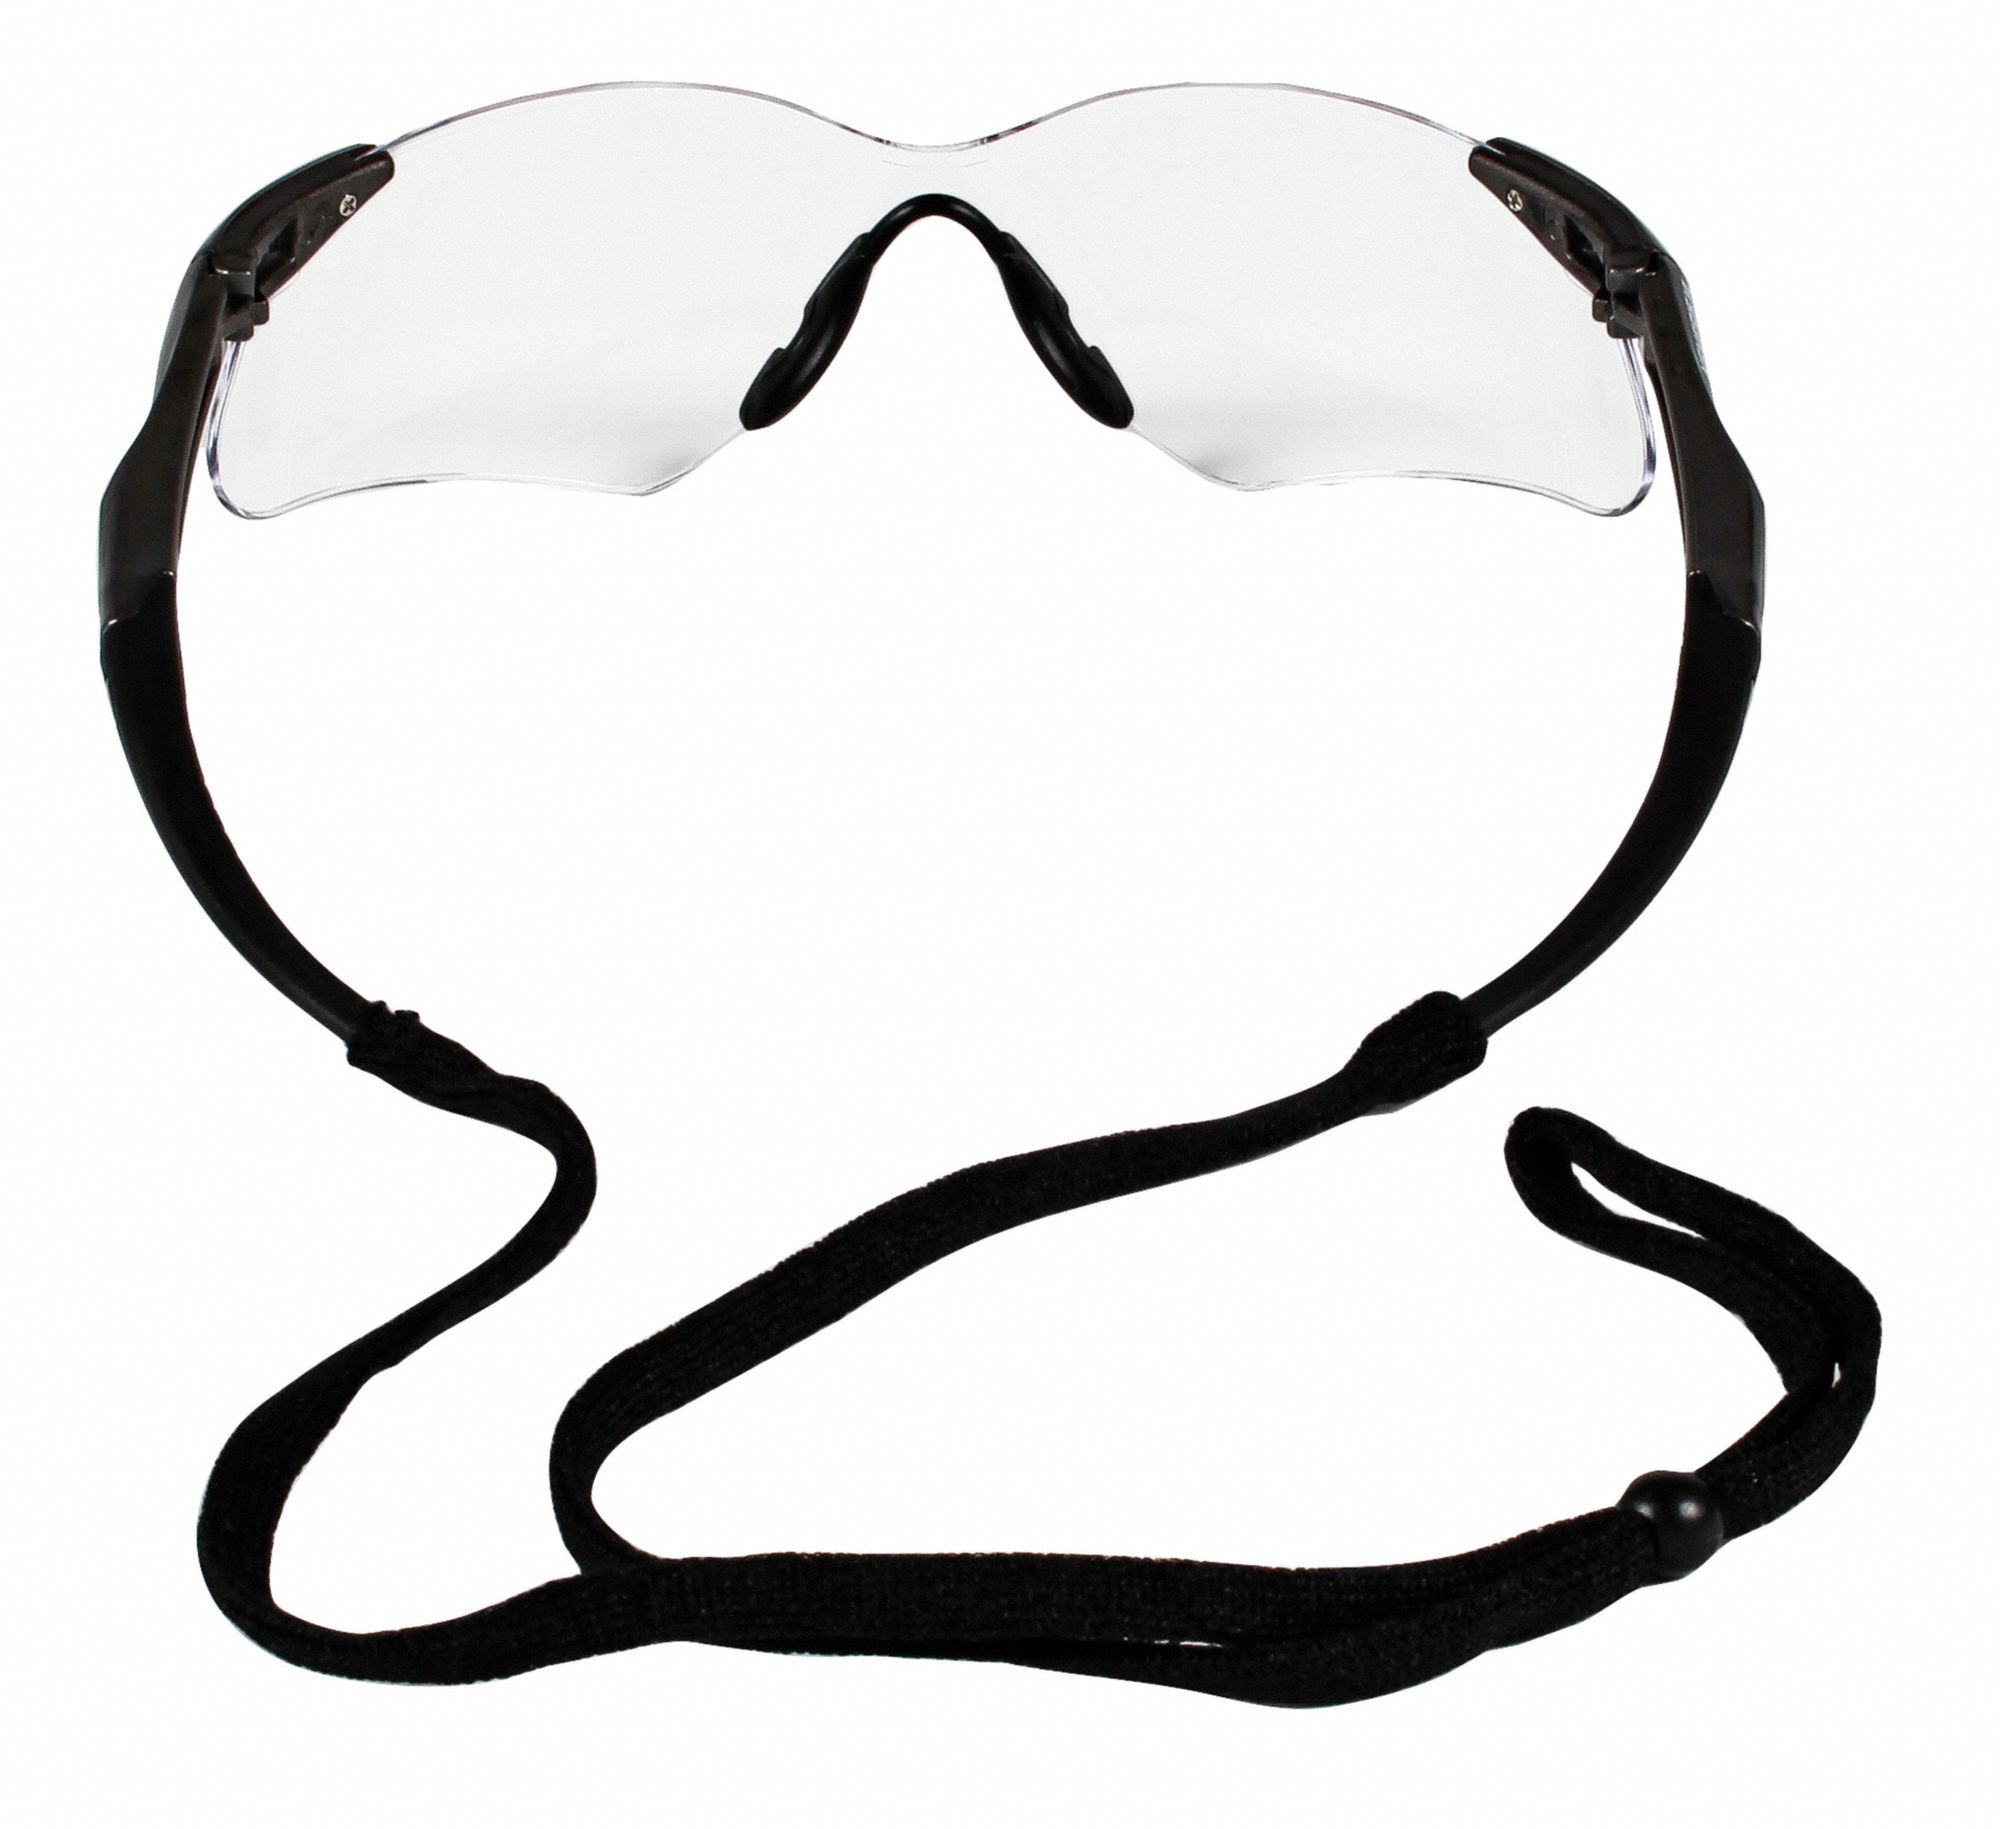 Kleenguard V30 Nemesis Vl Anti Fog Scratch Resistant Safety Glasses Clear Lens Color 33va56